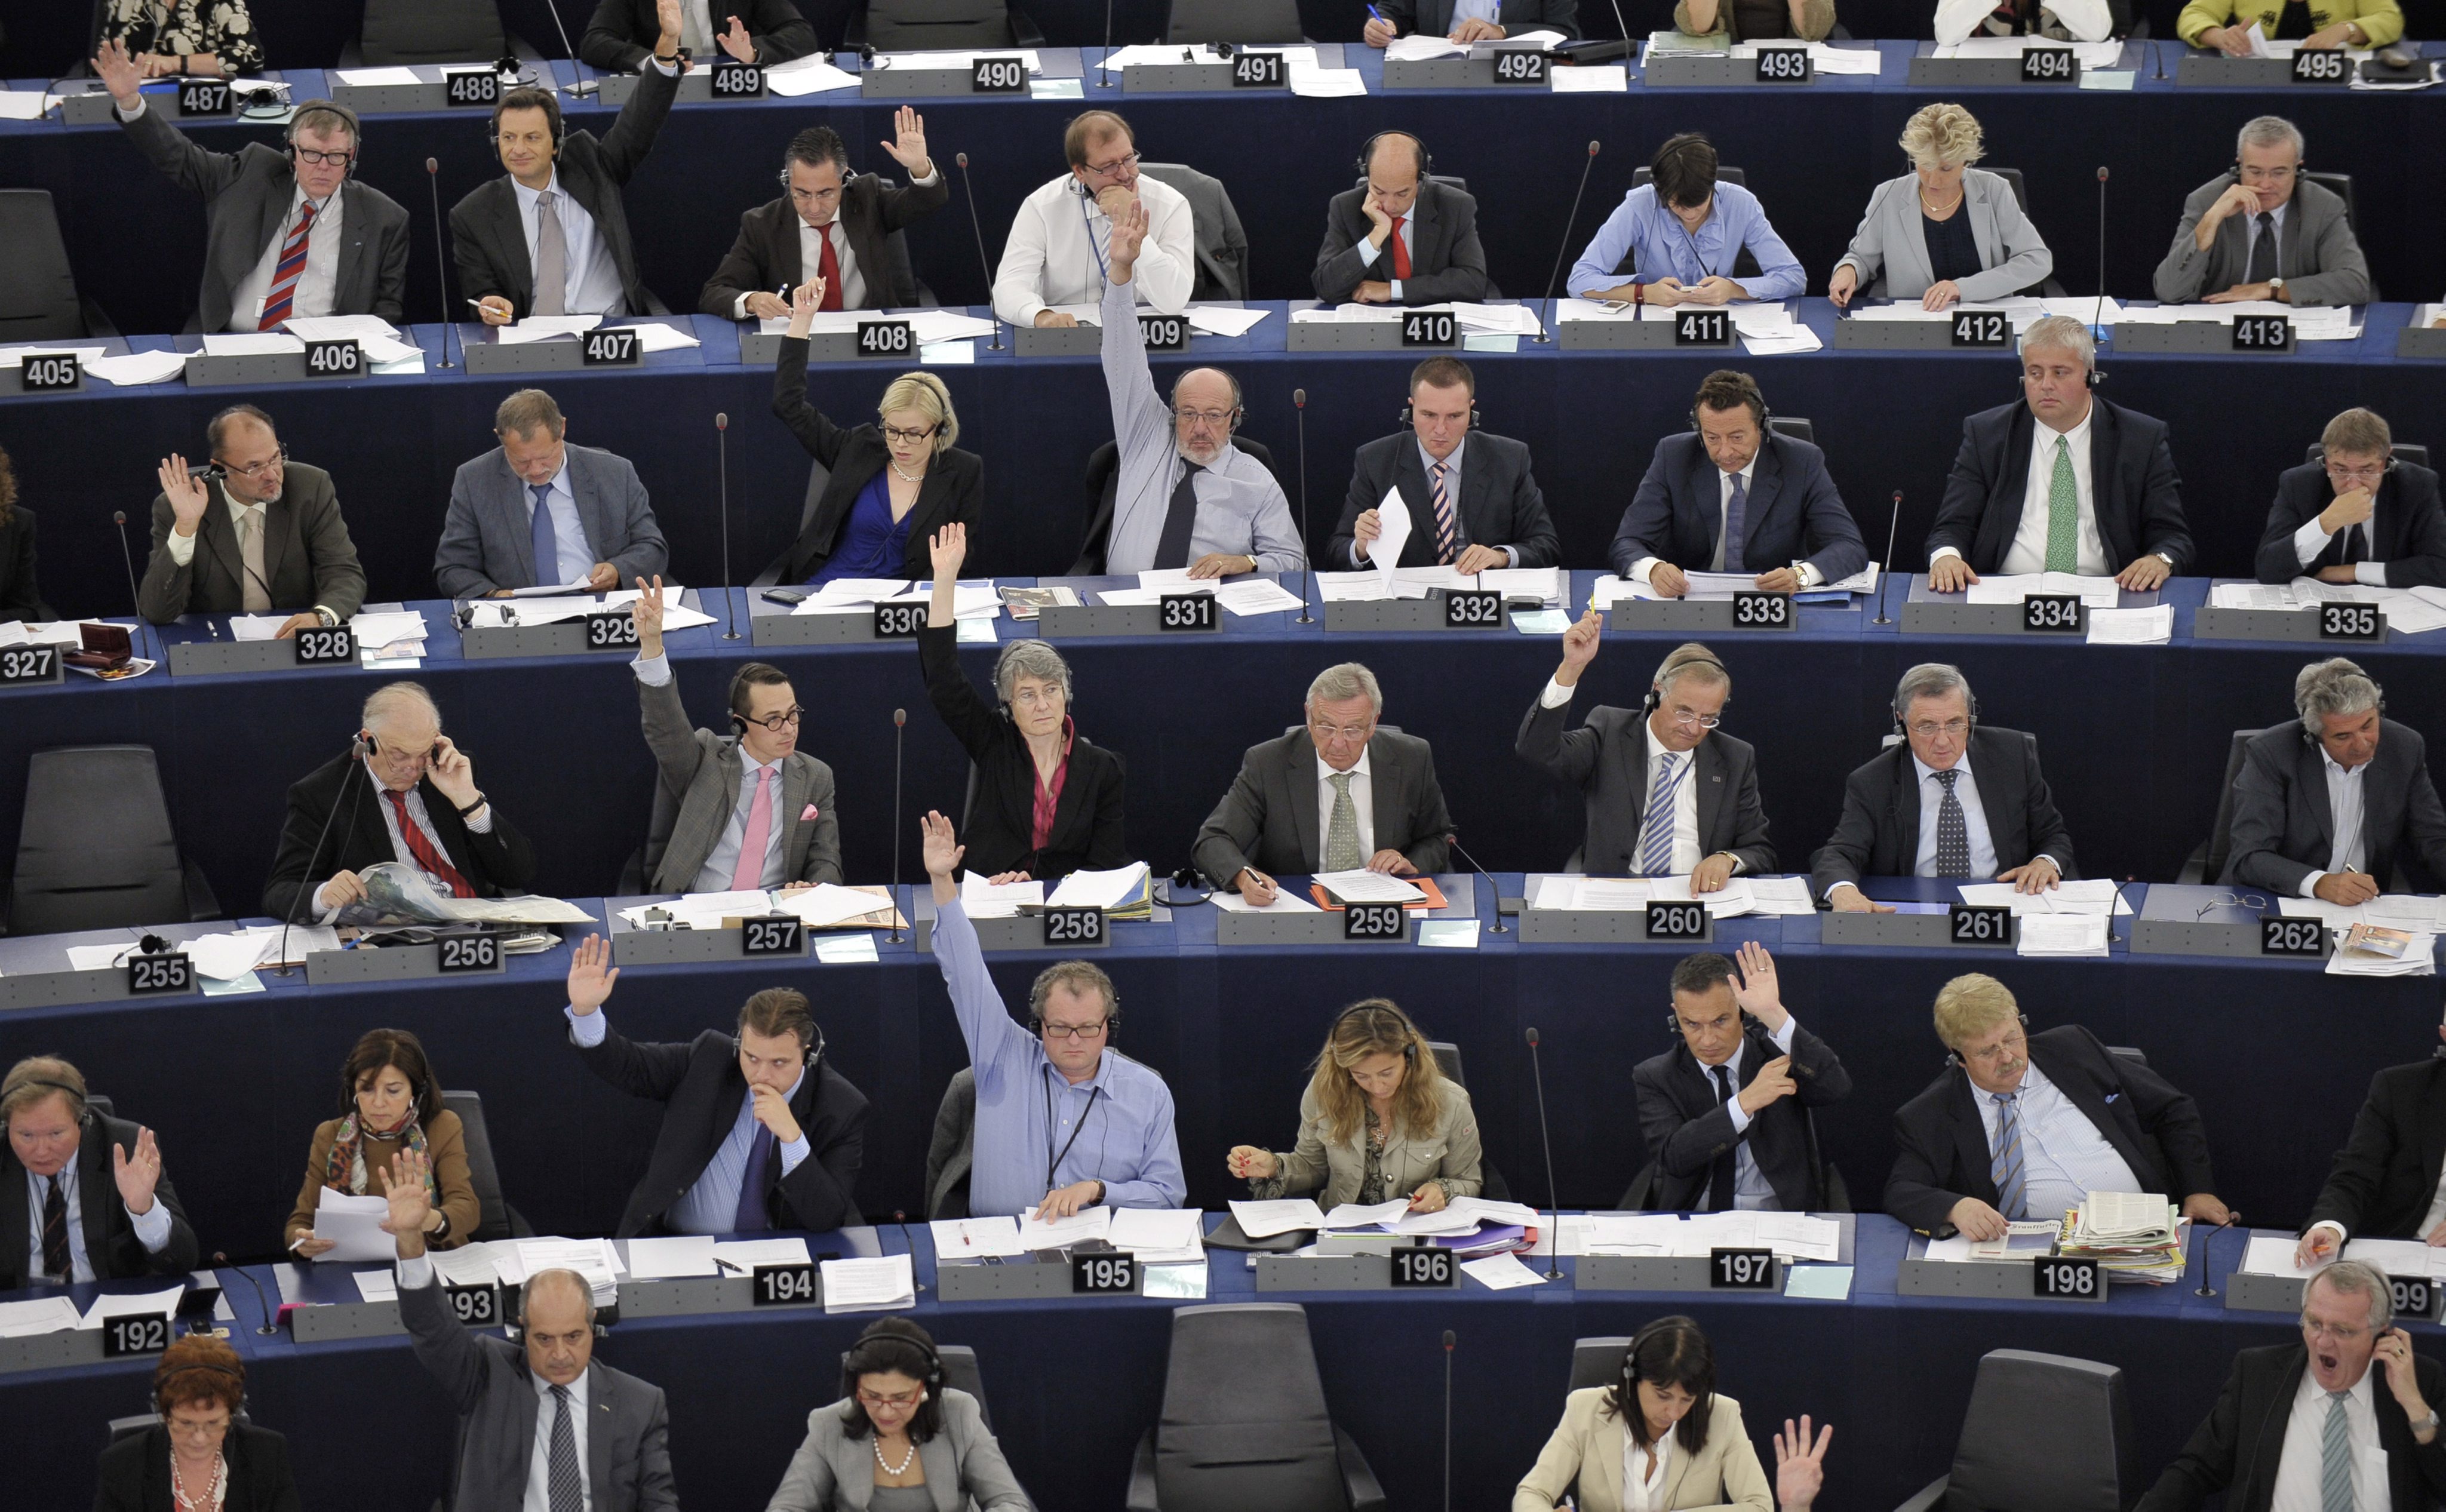 Η τρόικα έθεσε σε κίνδυνο τη διαφάνεια, λέει η έκθεση του Ευρωκοινοβουλίου